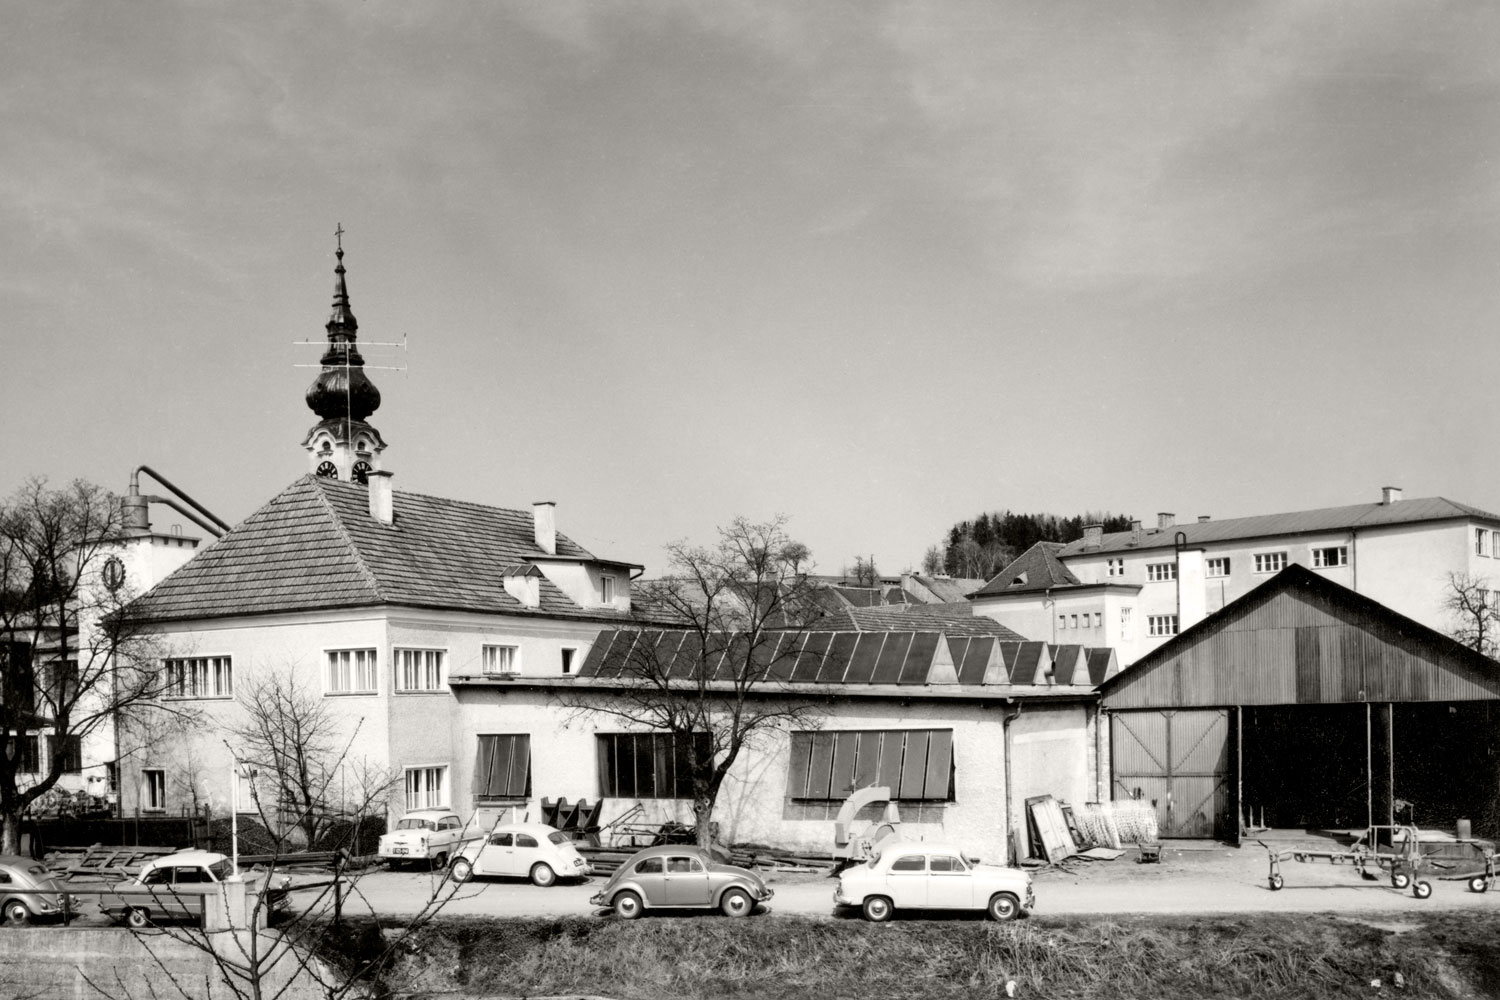 Část centra Grieskirchenu: Závod I firmy PÖTTINGER kolem roku 1960. VW Brouk se těší mezi zaměstnanci/zaměstnankyně firmy PÖTTINGER zjevné oblibě.